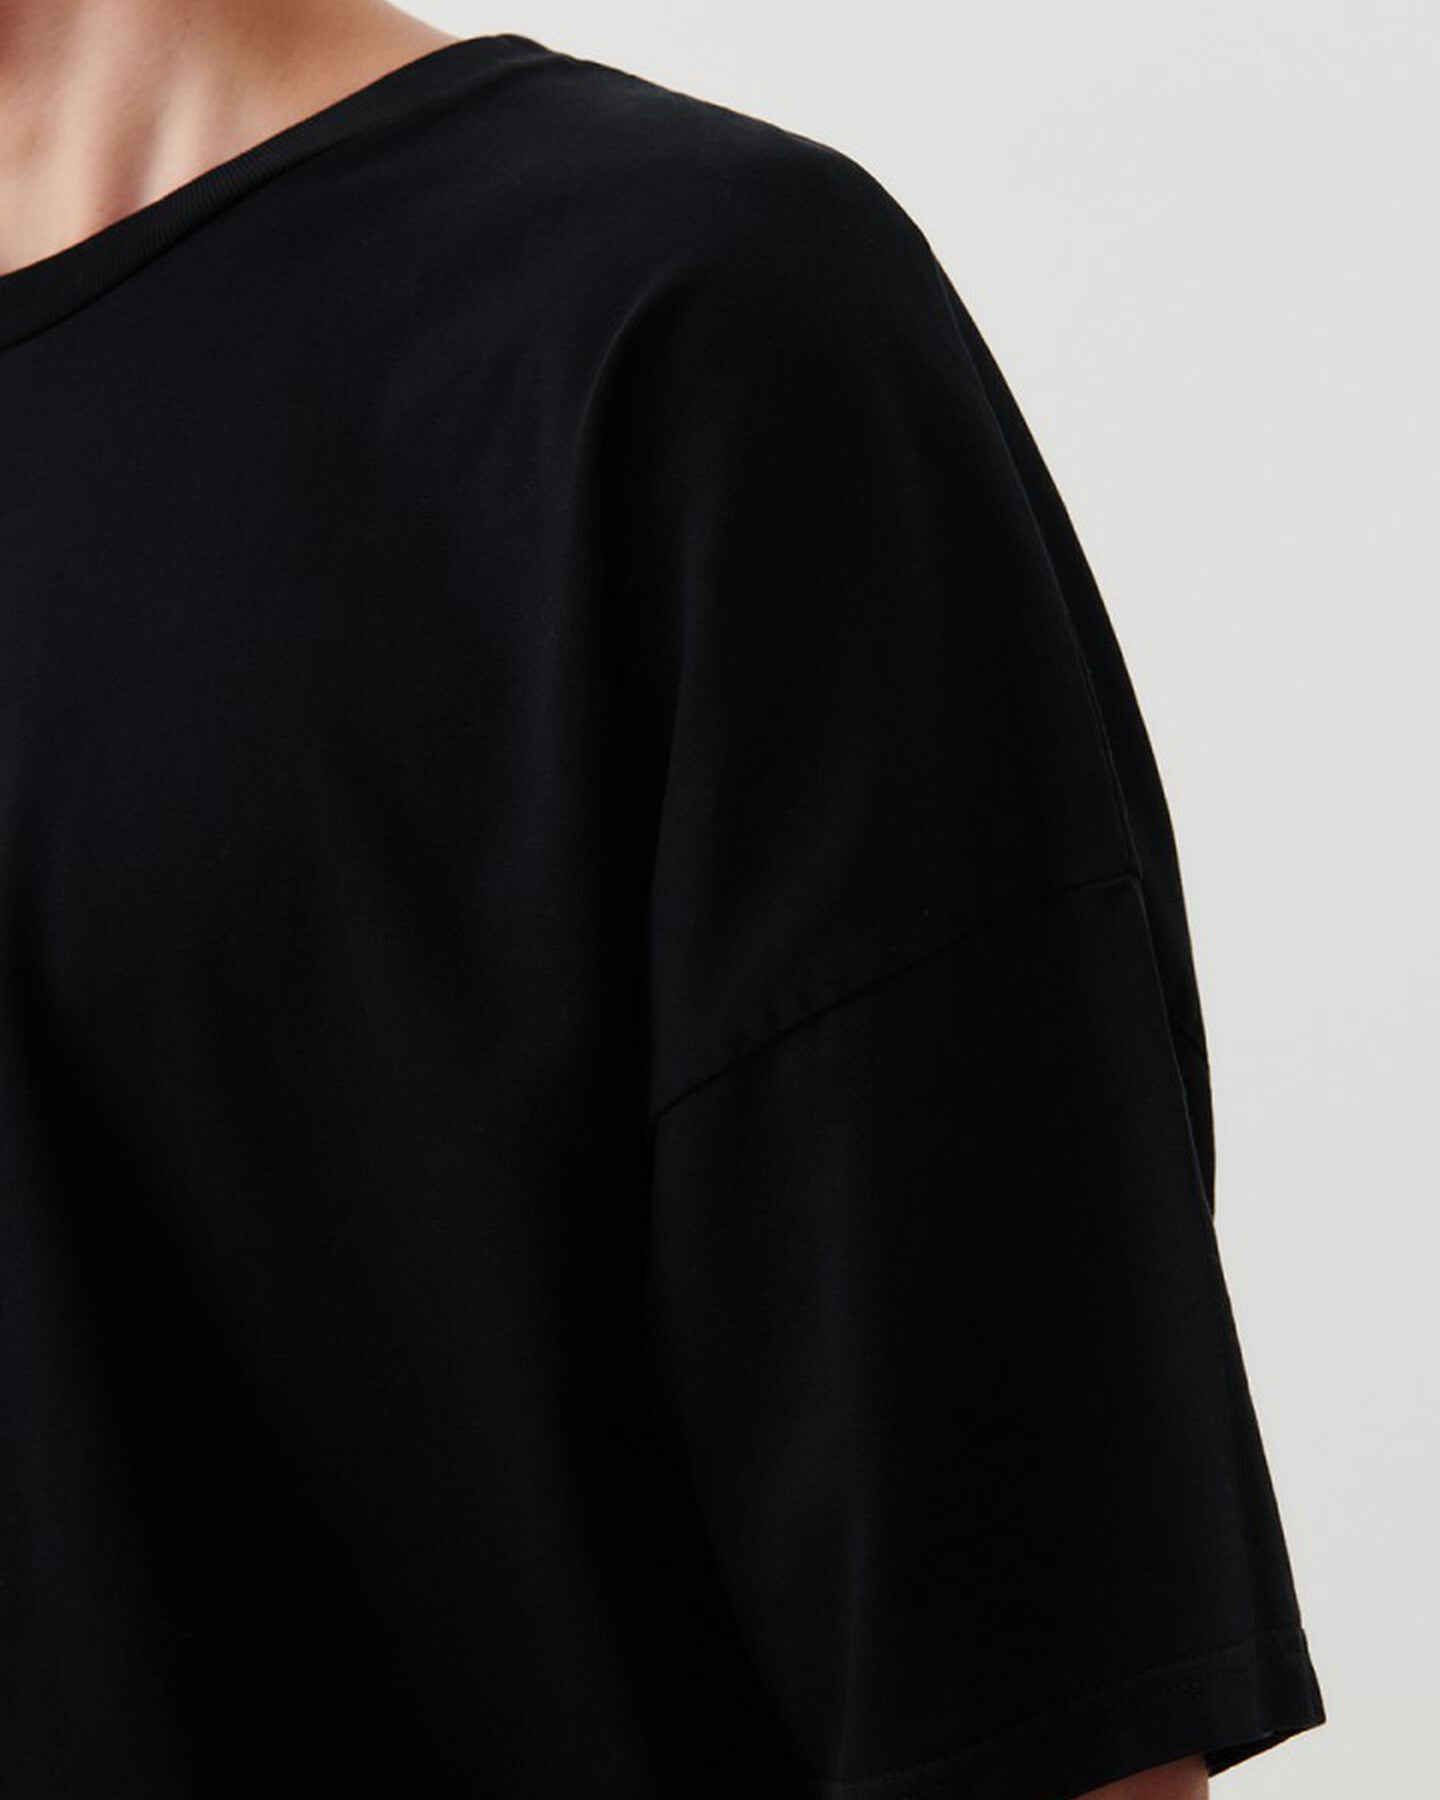 Fizvalley t-shirt - Noir